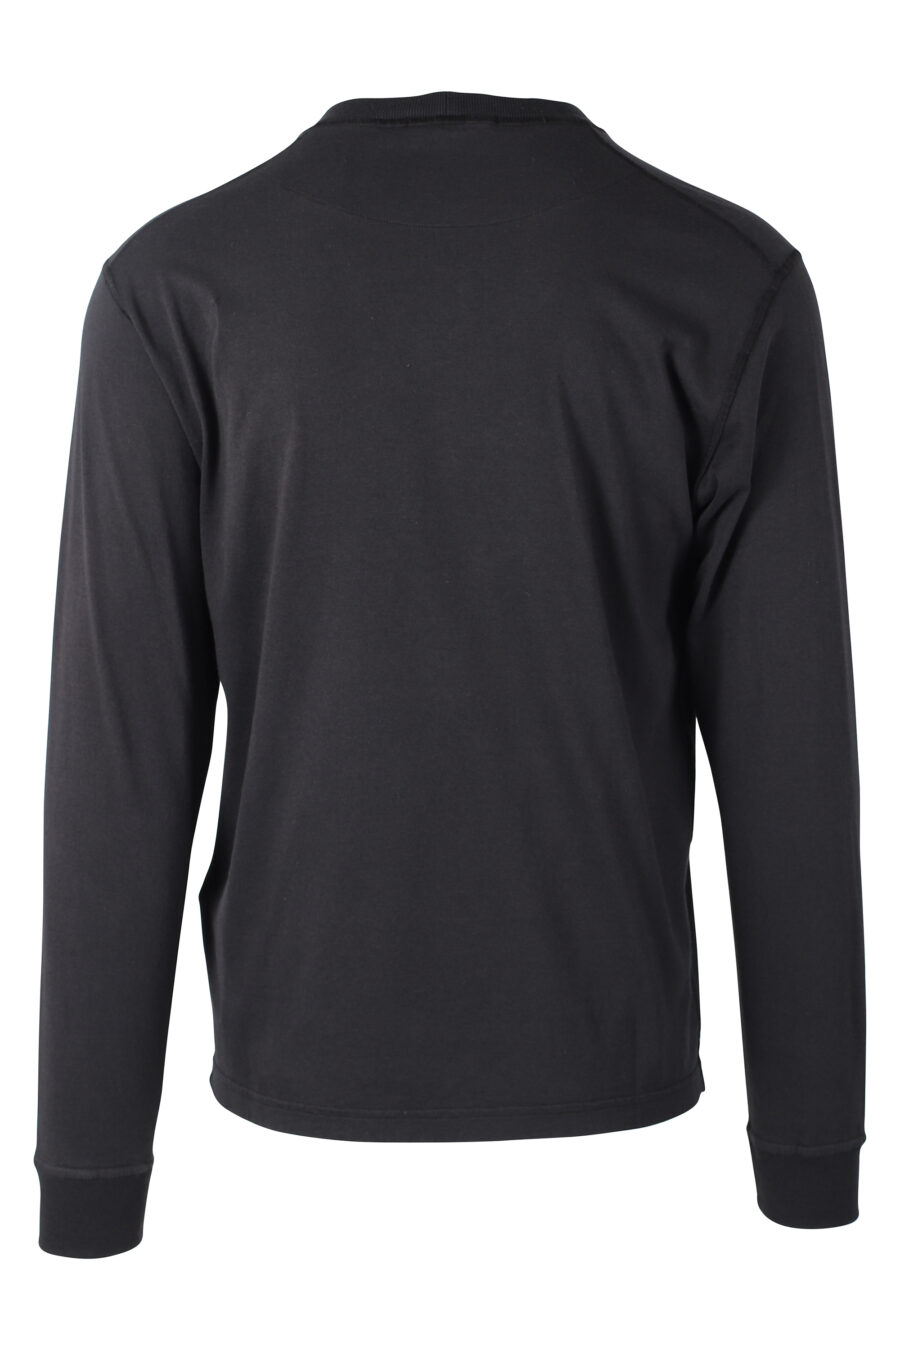 Camiseta manga larga negra con logo parche - IMG 8375